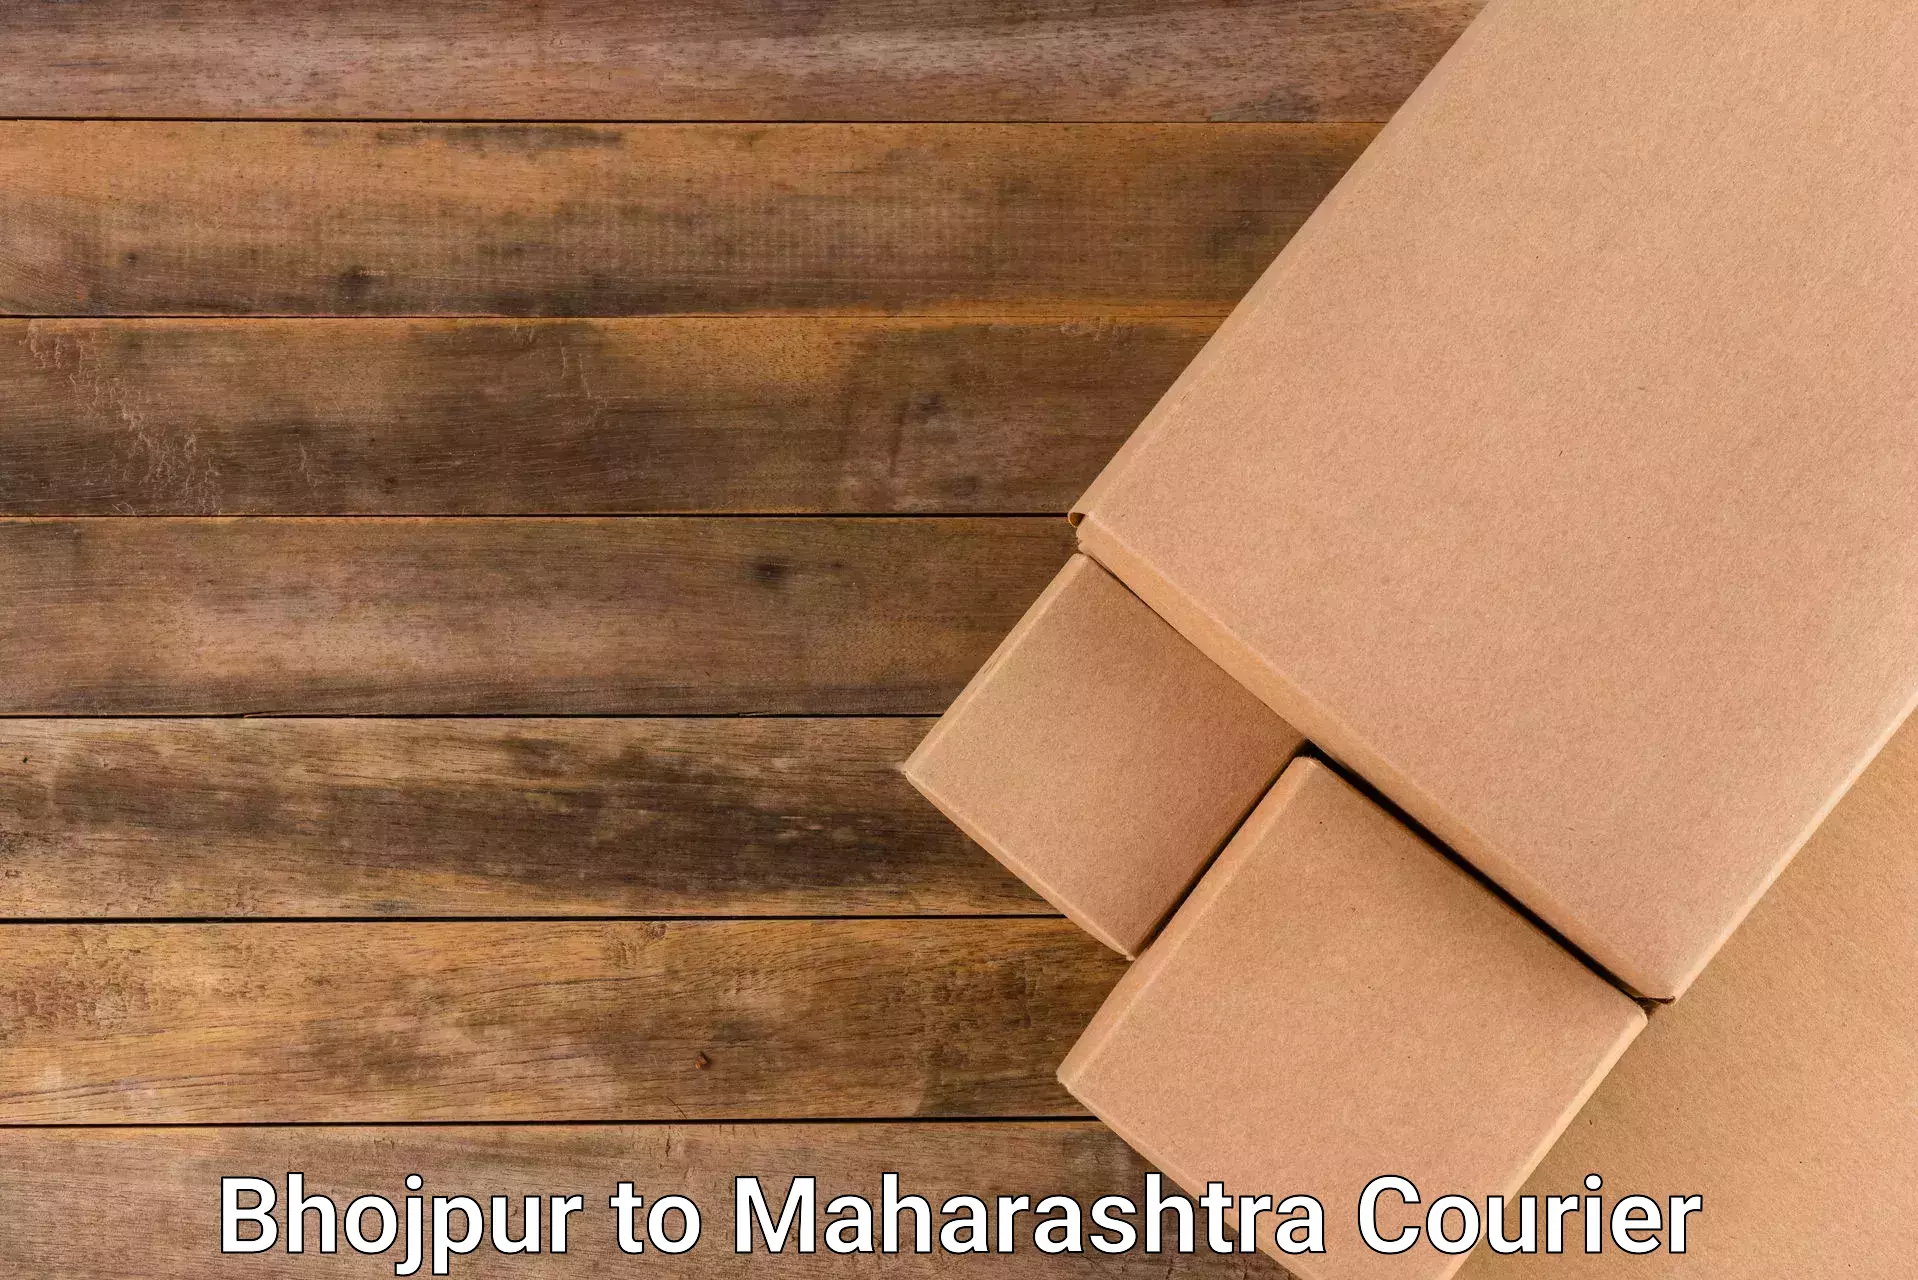 Efficient logistics management Bhojpur to Mahim